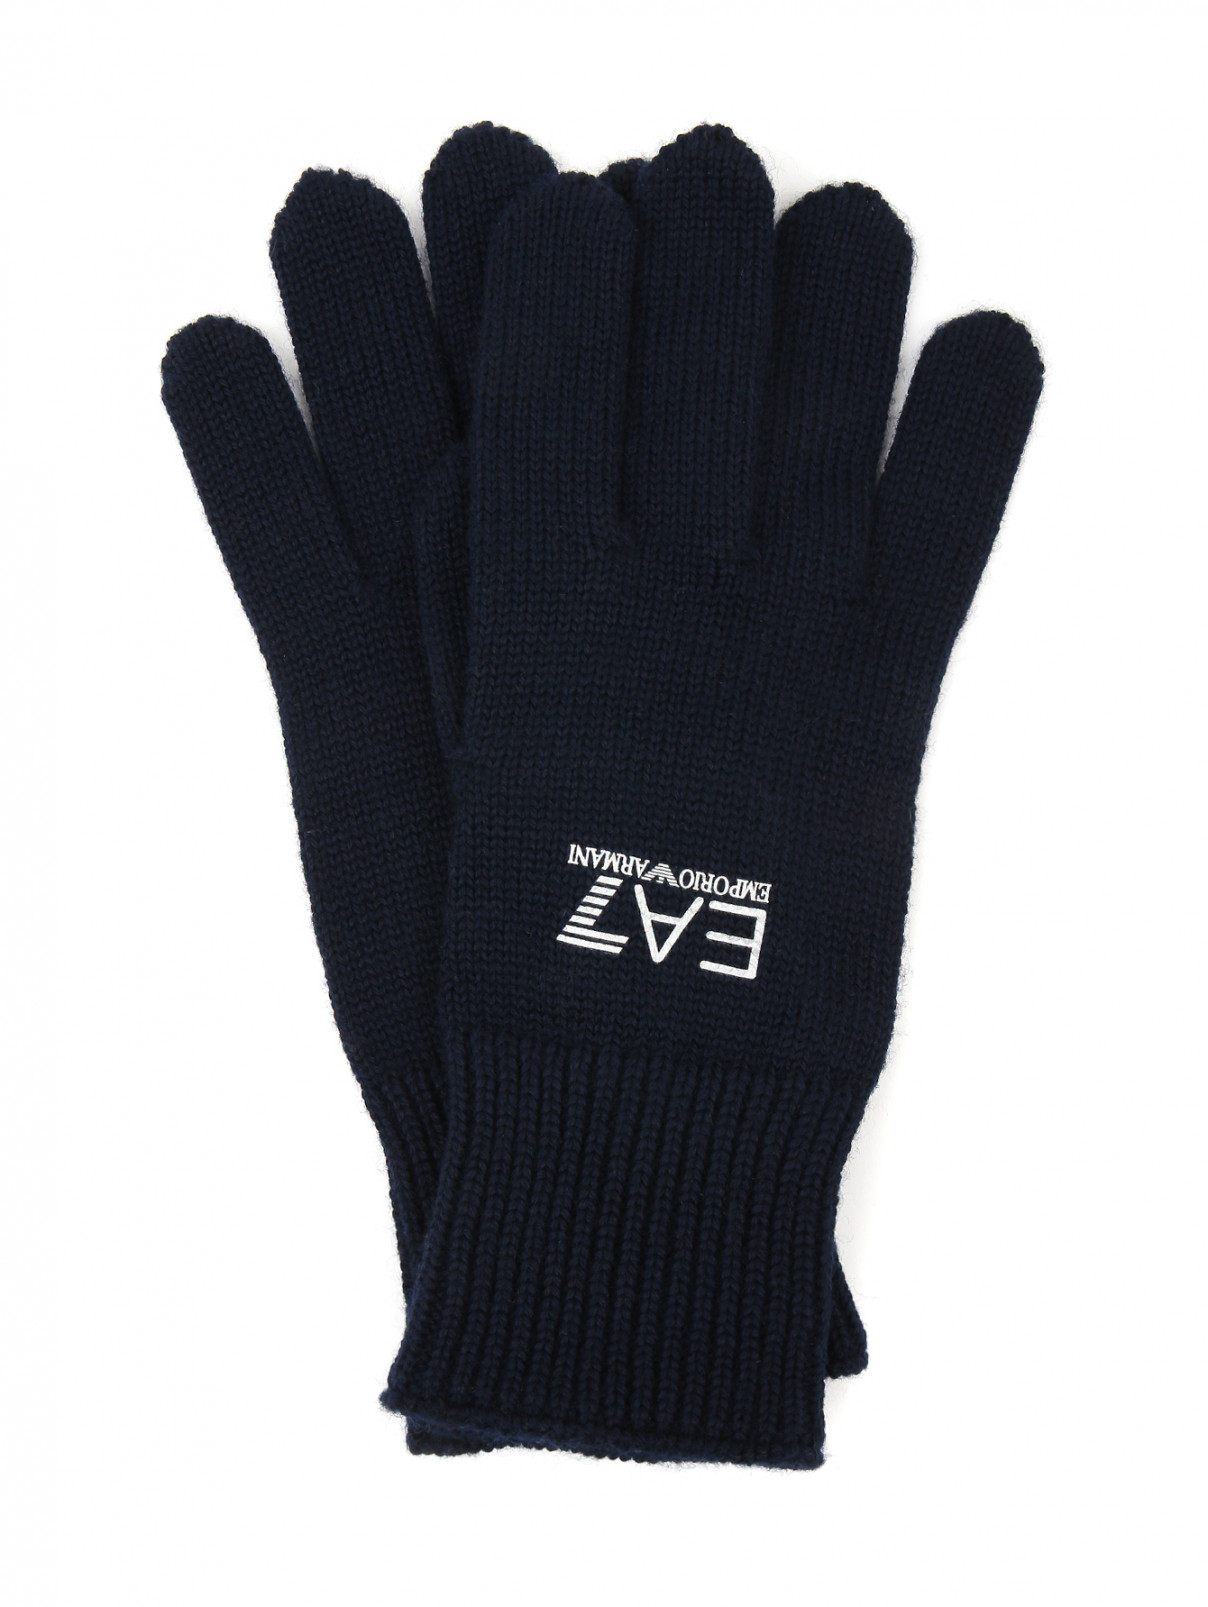 Перчатки из шерсти с принтом EA7 Emporio Armani  –  Общий вид  – Цвет:  Синий